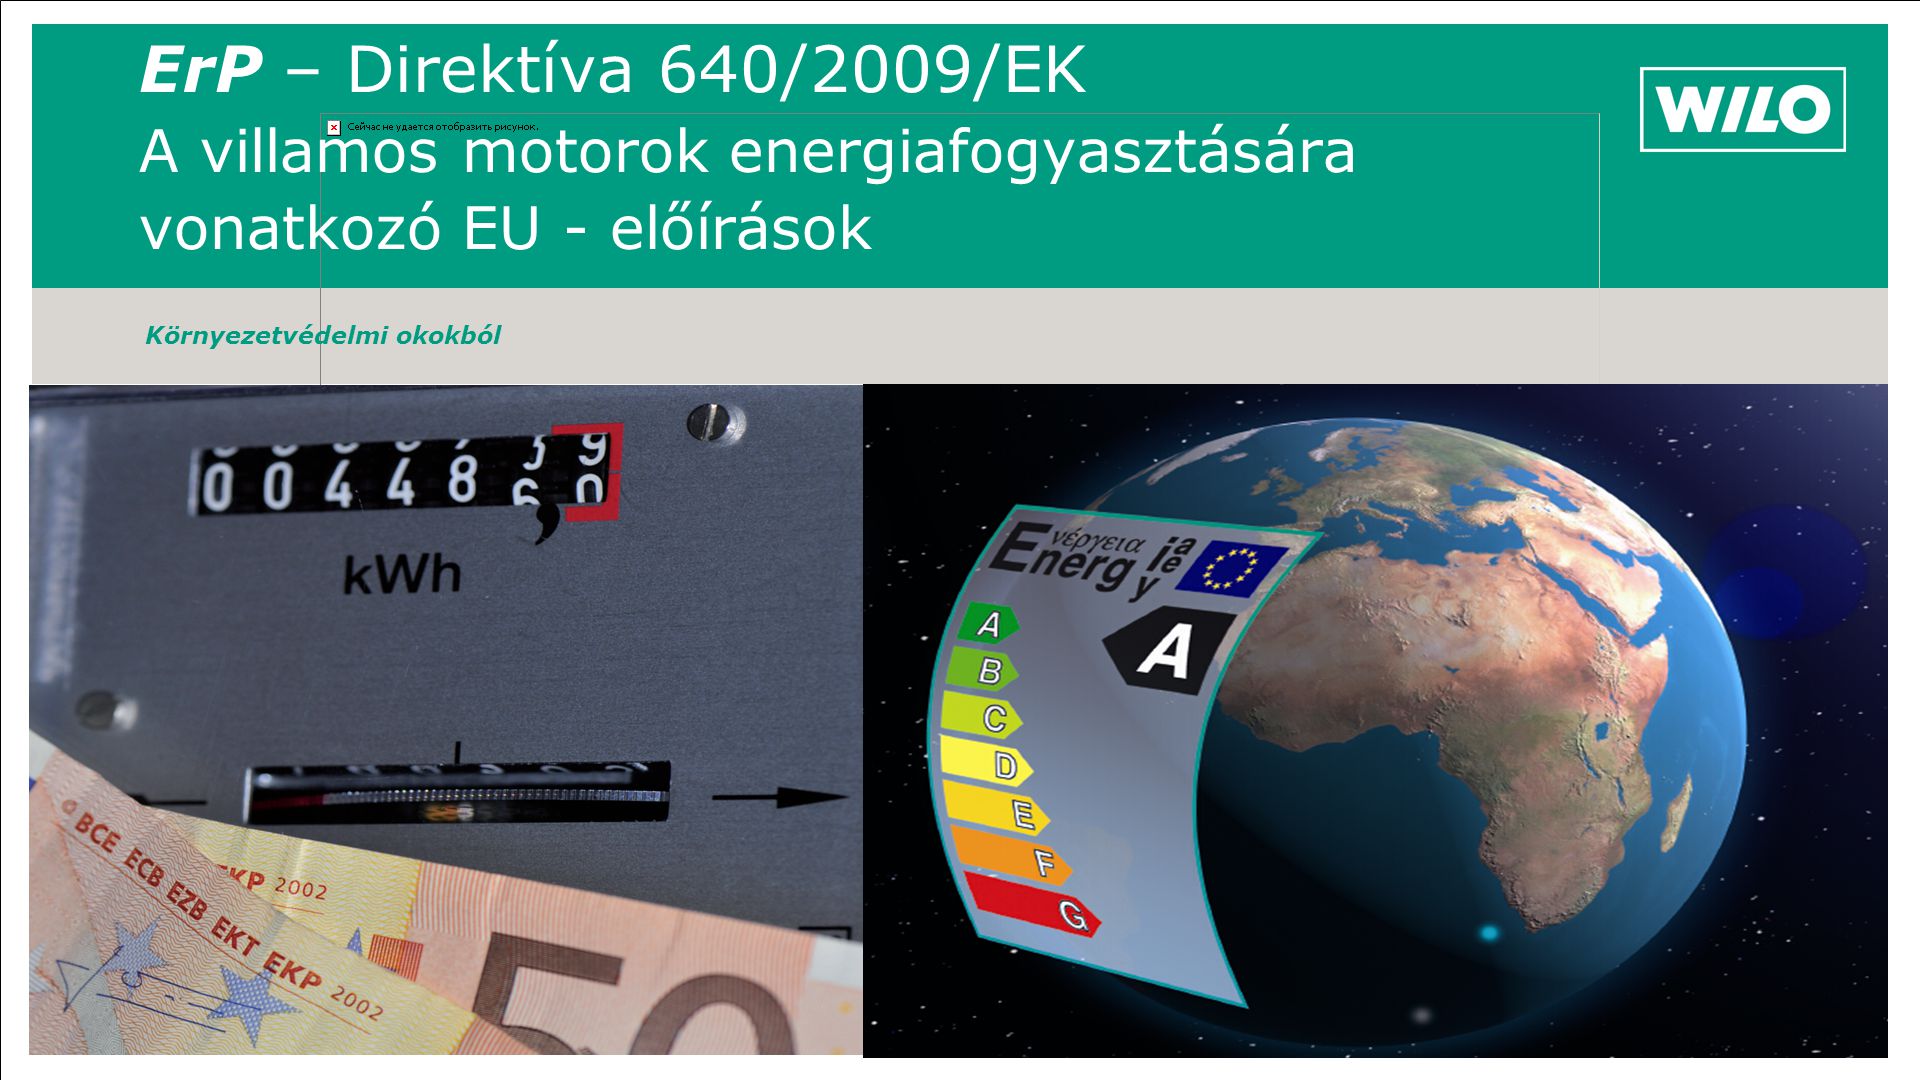 ErP – Direktíva 640/2009/EK A villamos motorok energiafogyasztására vonatkozó EU - előírások Környezetvédelmi okokból